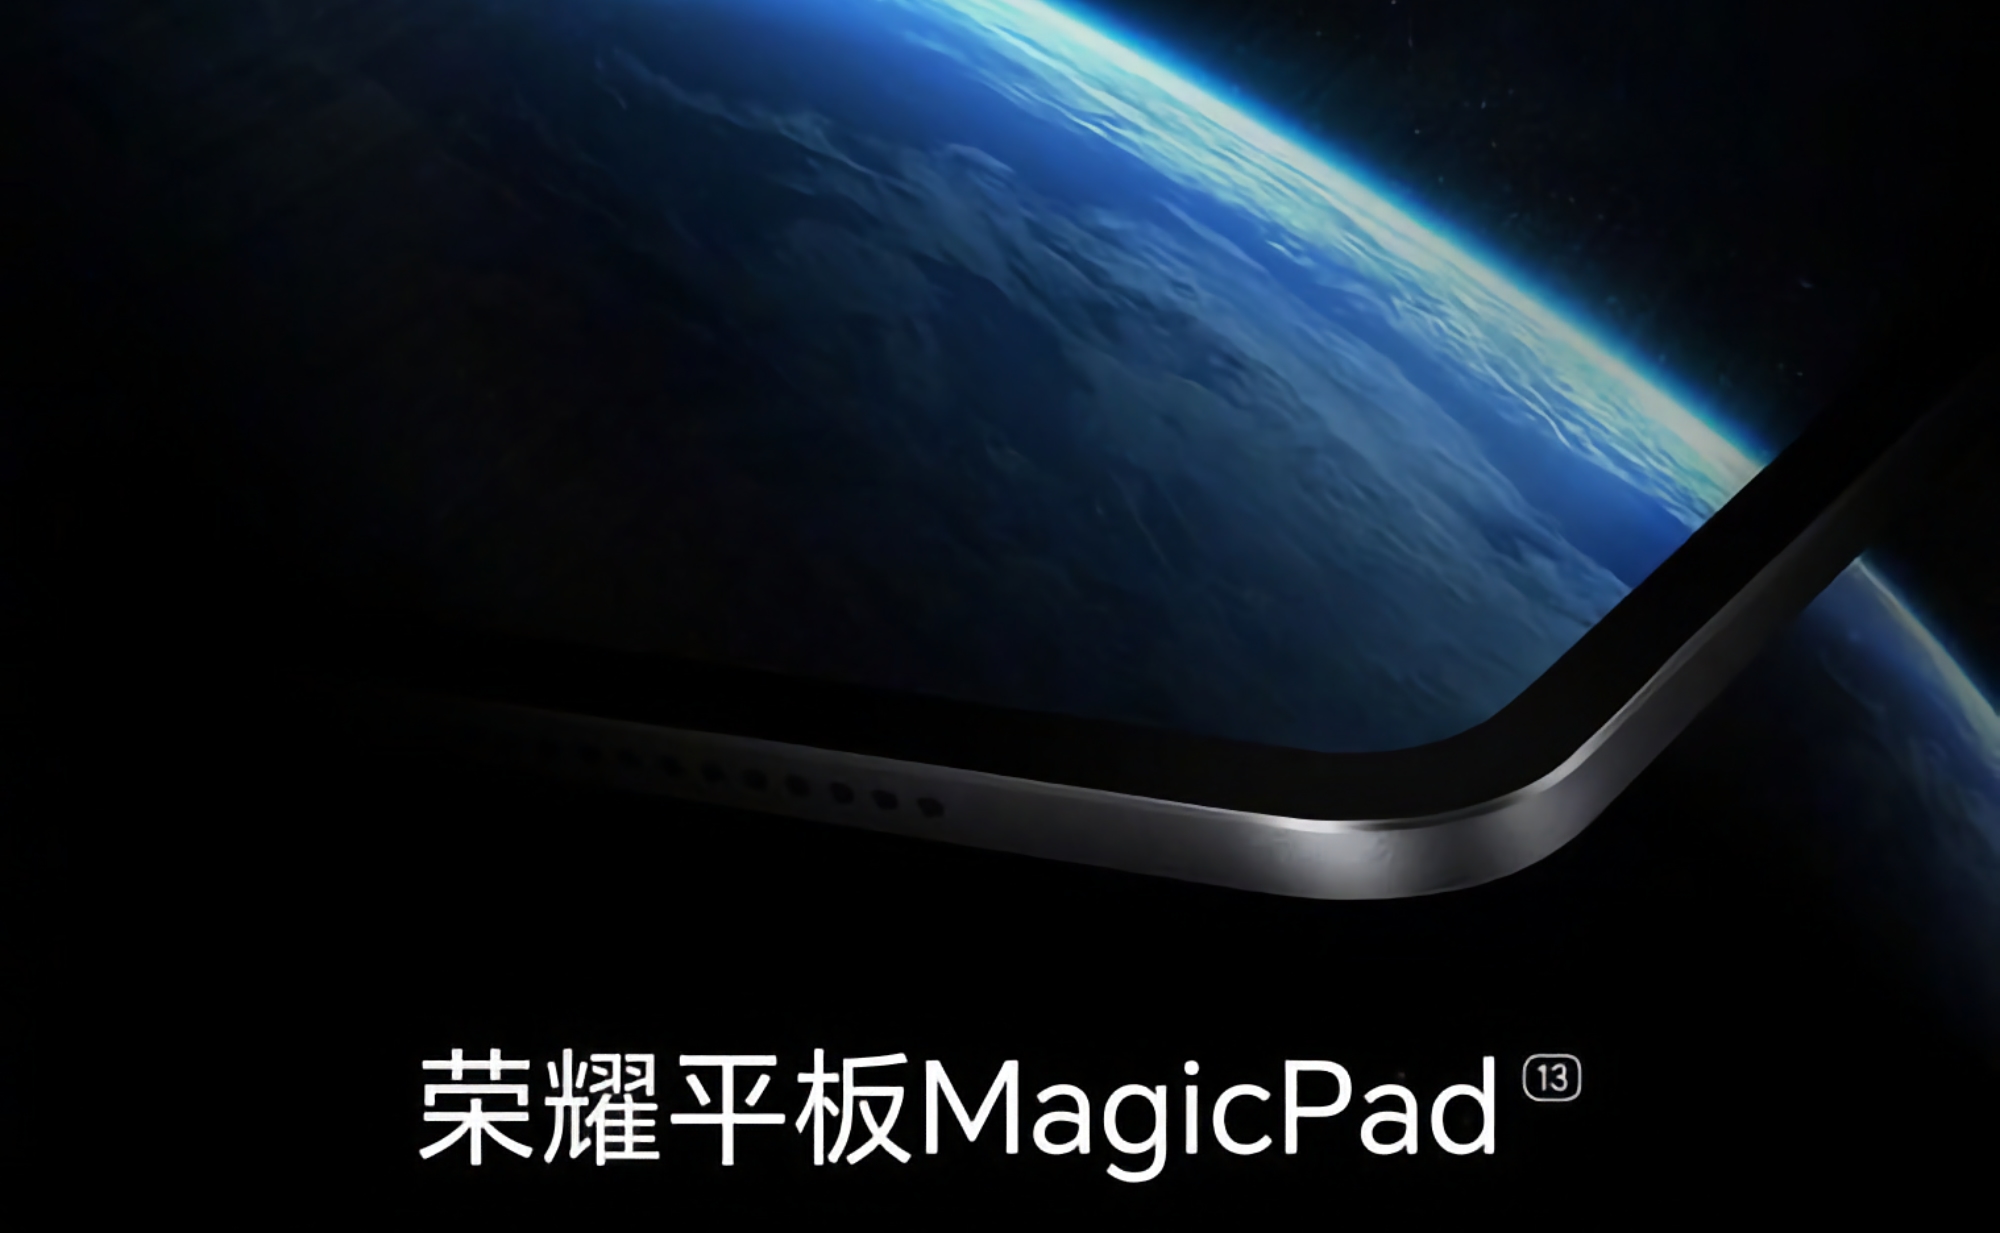 Inte bara den vikbara Magic V2-smarttelefonen: Honor kommer även att visa upp surfplattan MagicPad 13 den 12 juli